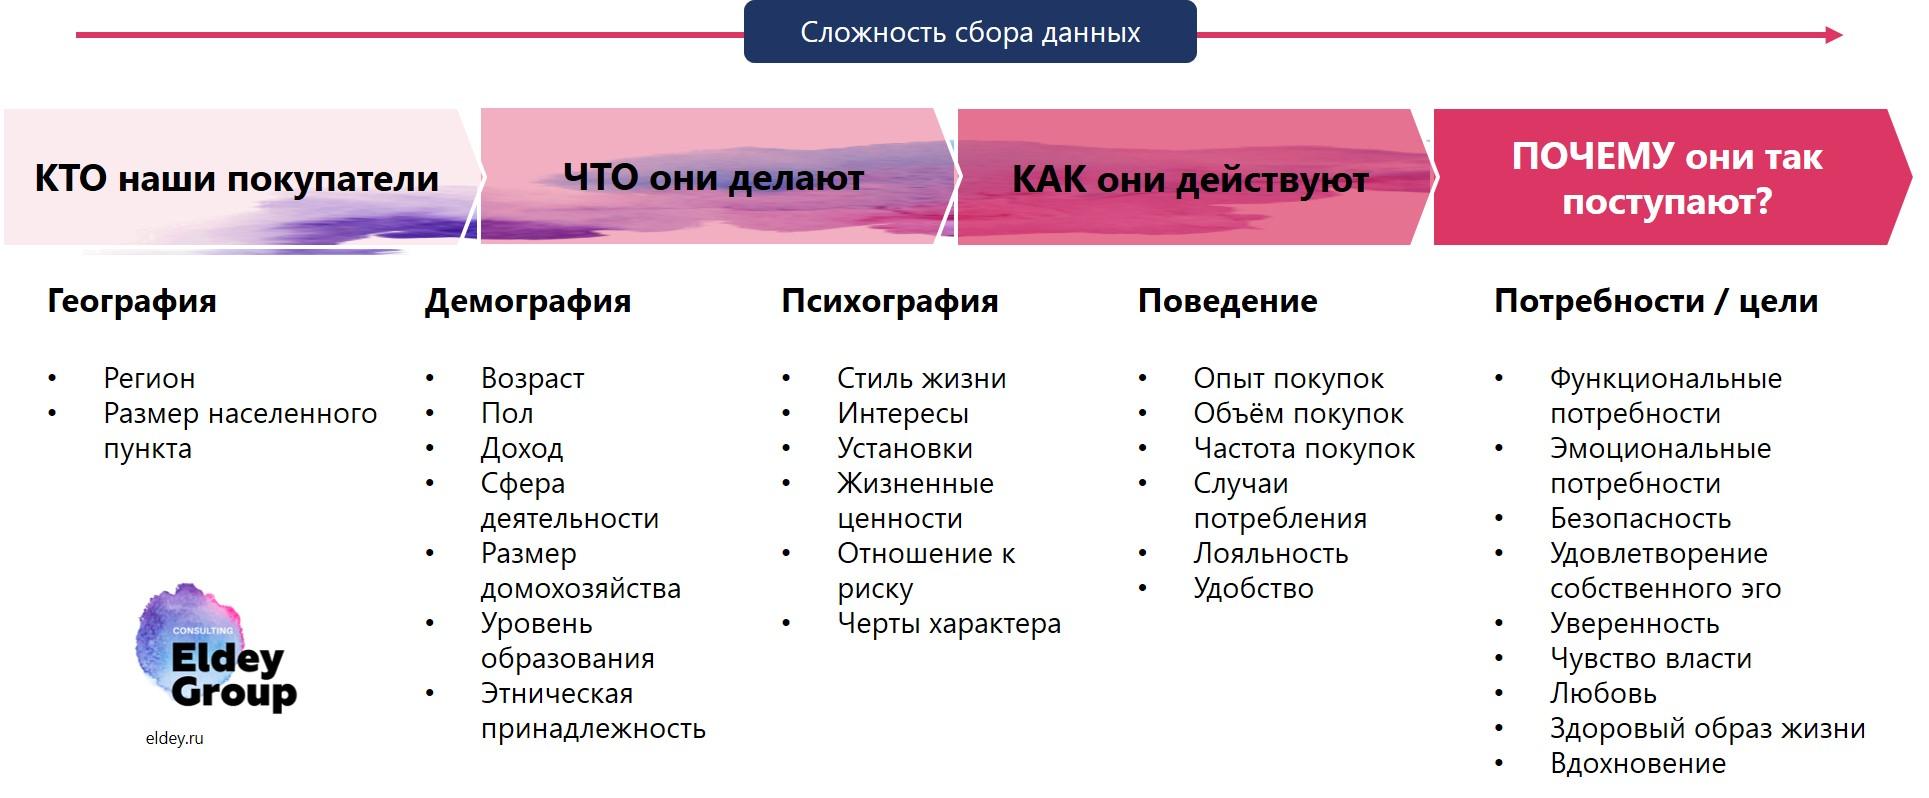 Примеры критериев сегментации потребителей на B2C рынке. Eldey Consulting Group eldey.ru